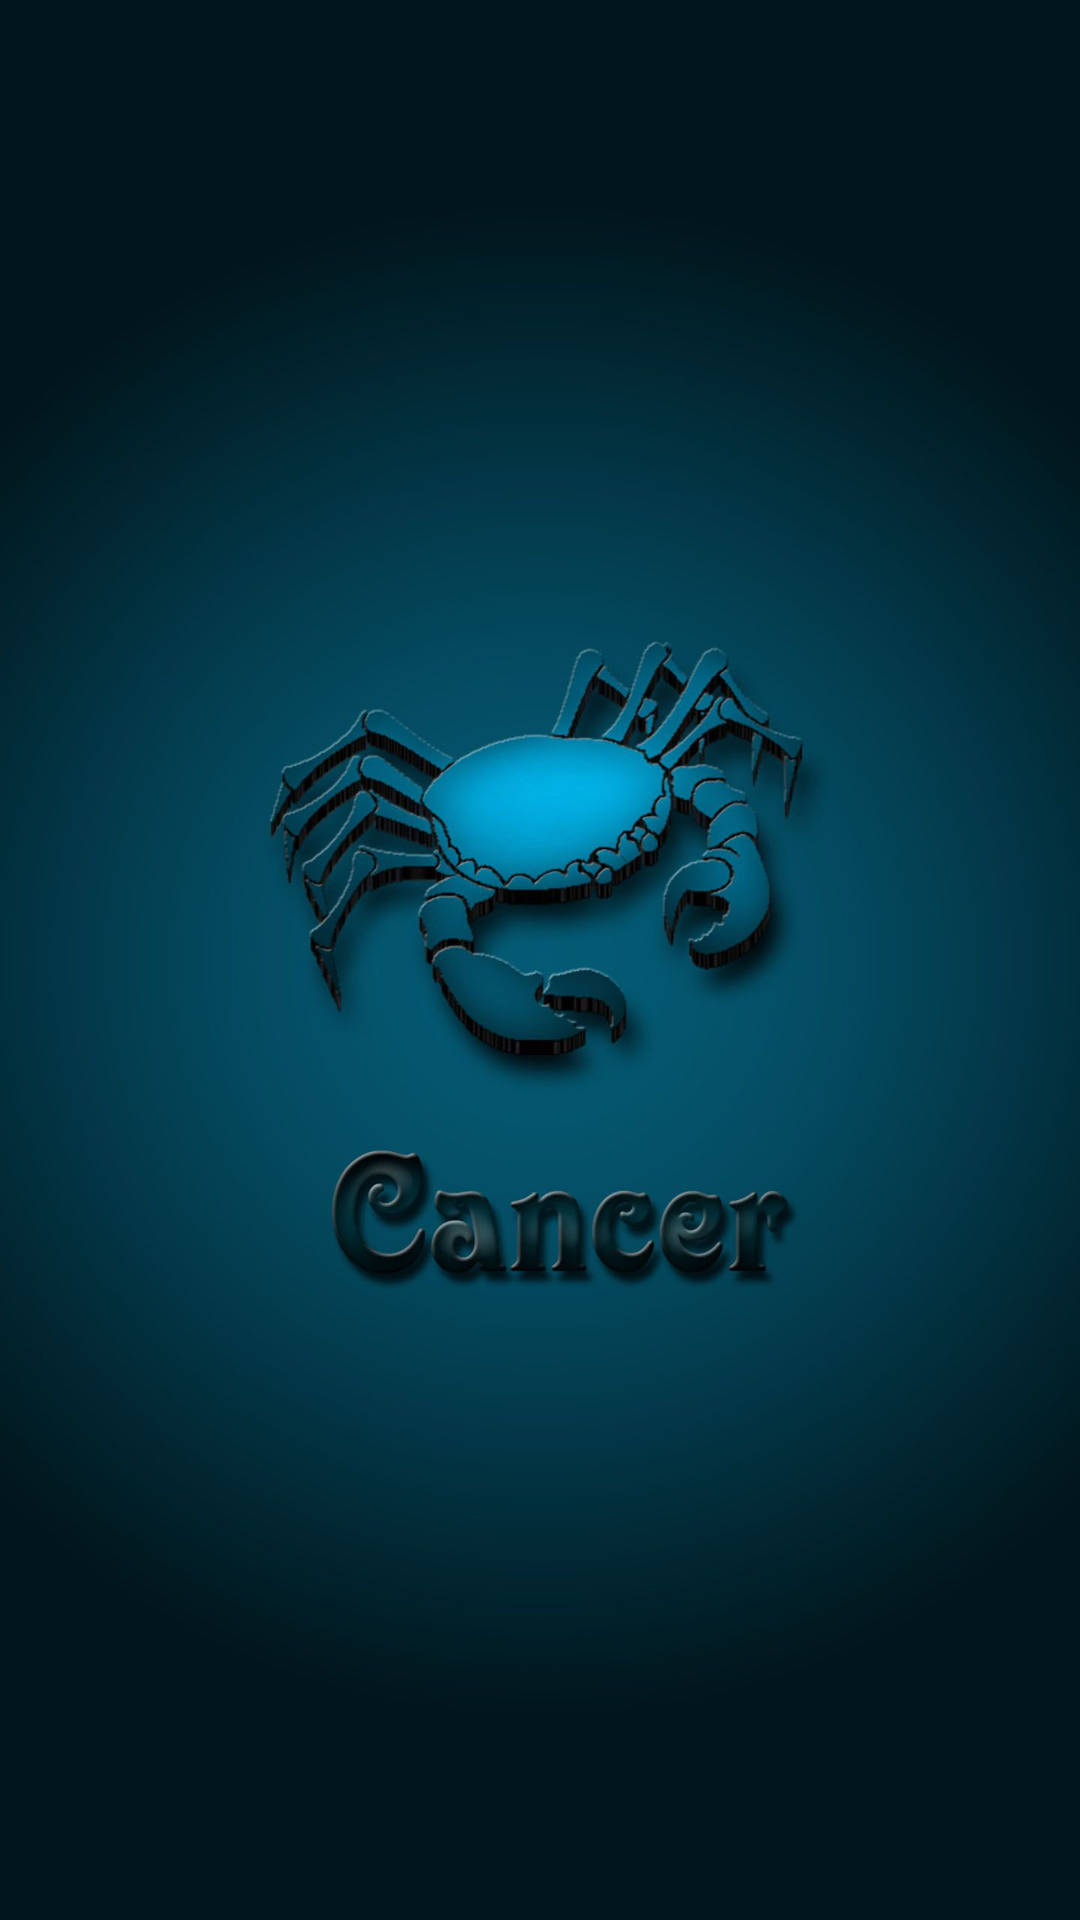 Krebssternzeichen - Ein Blauer Krebs Auf Dunklem Hintergrund Wallpaper